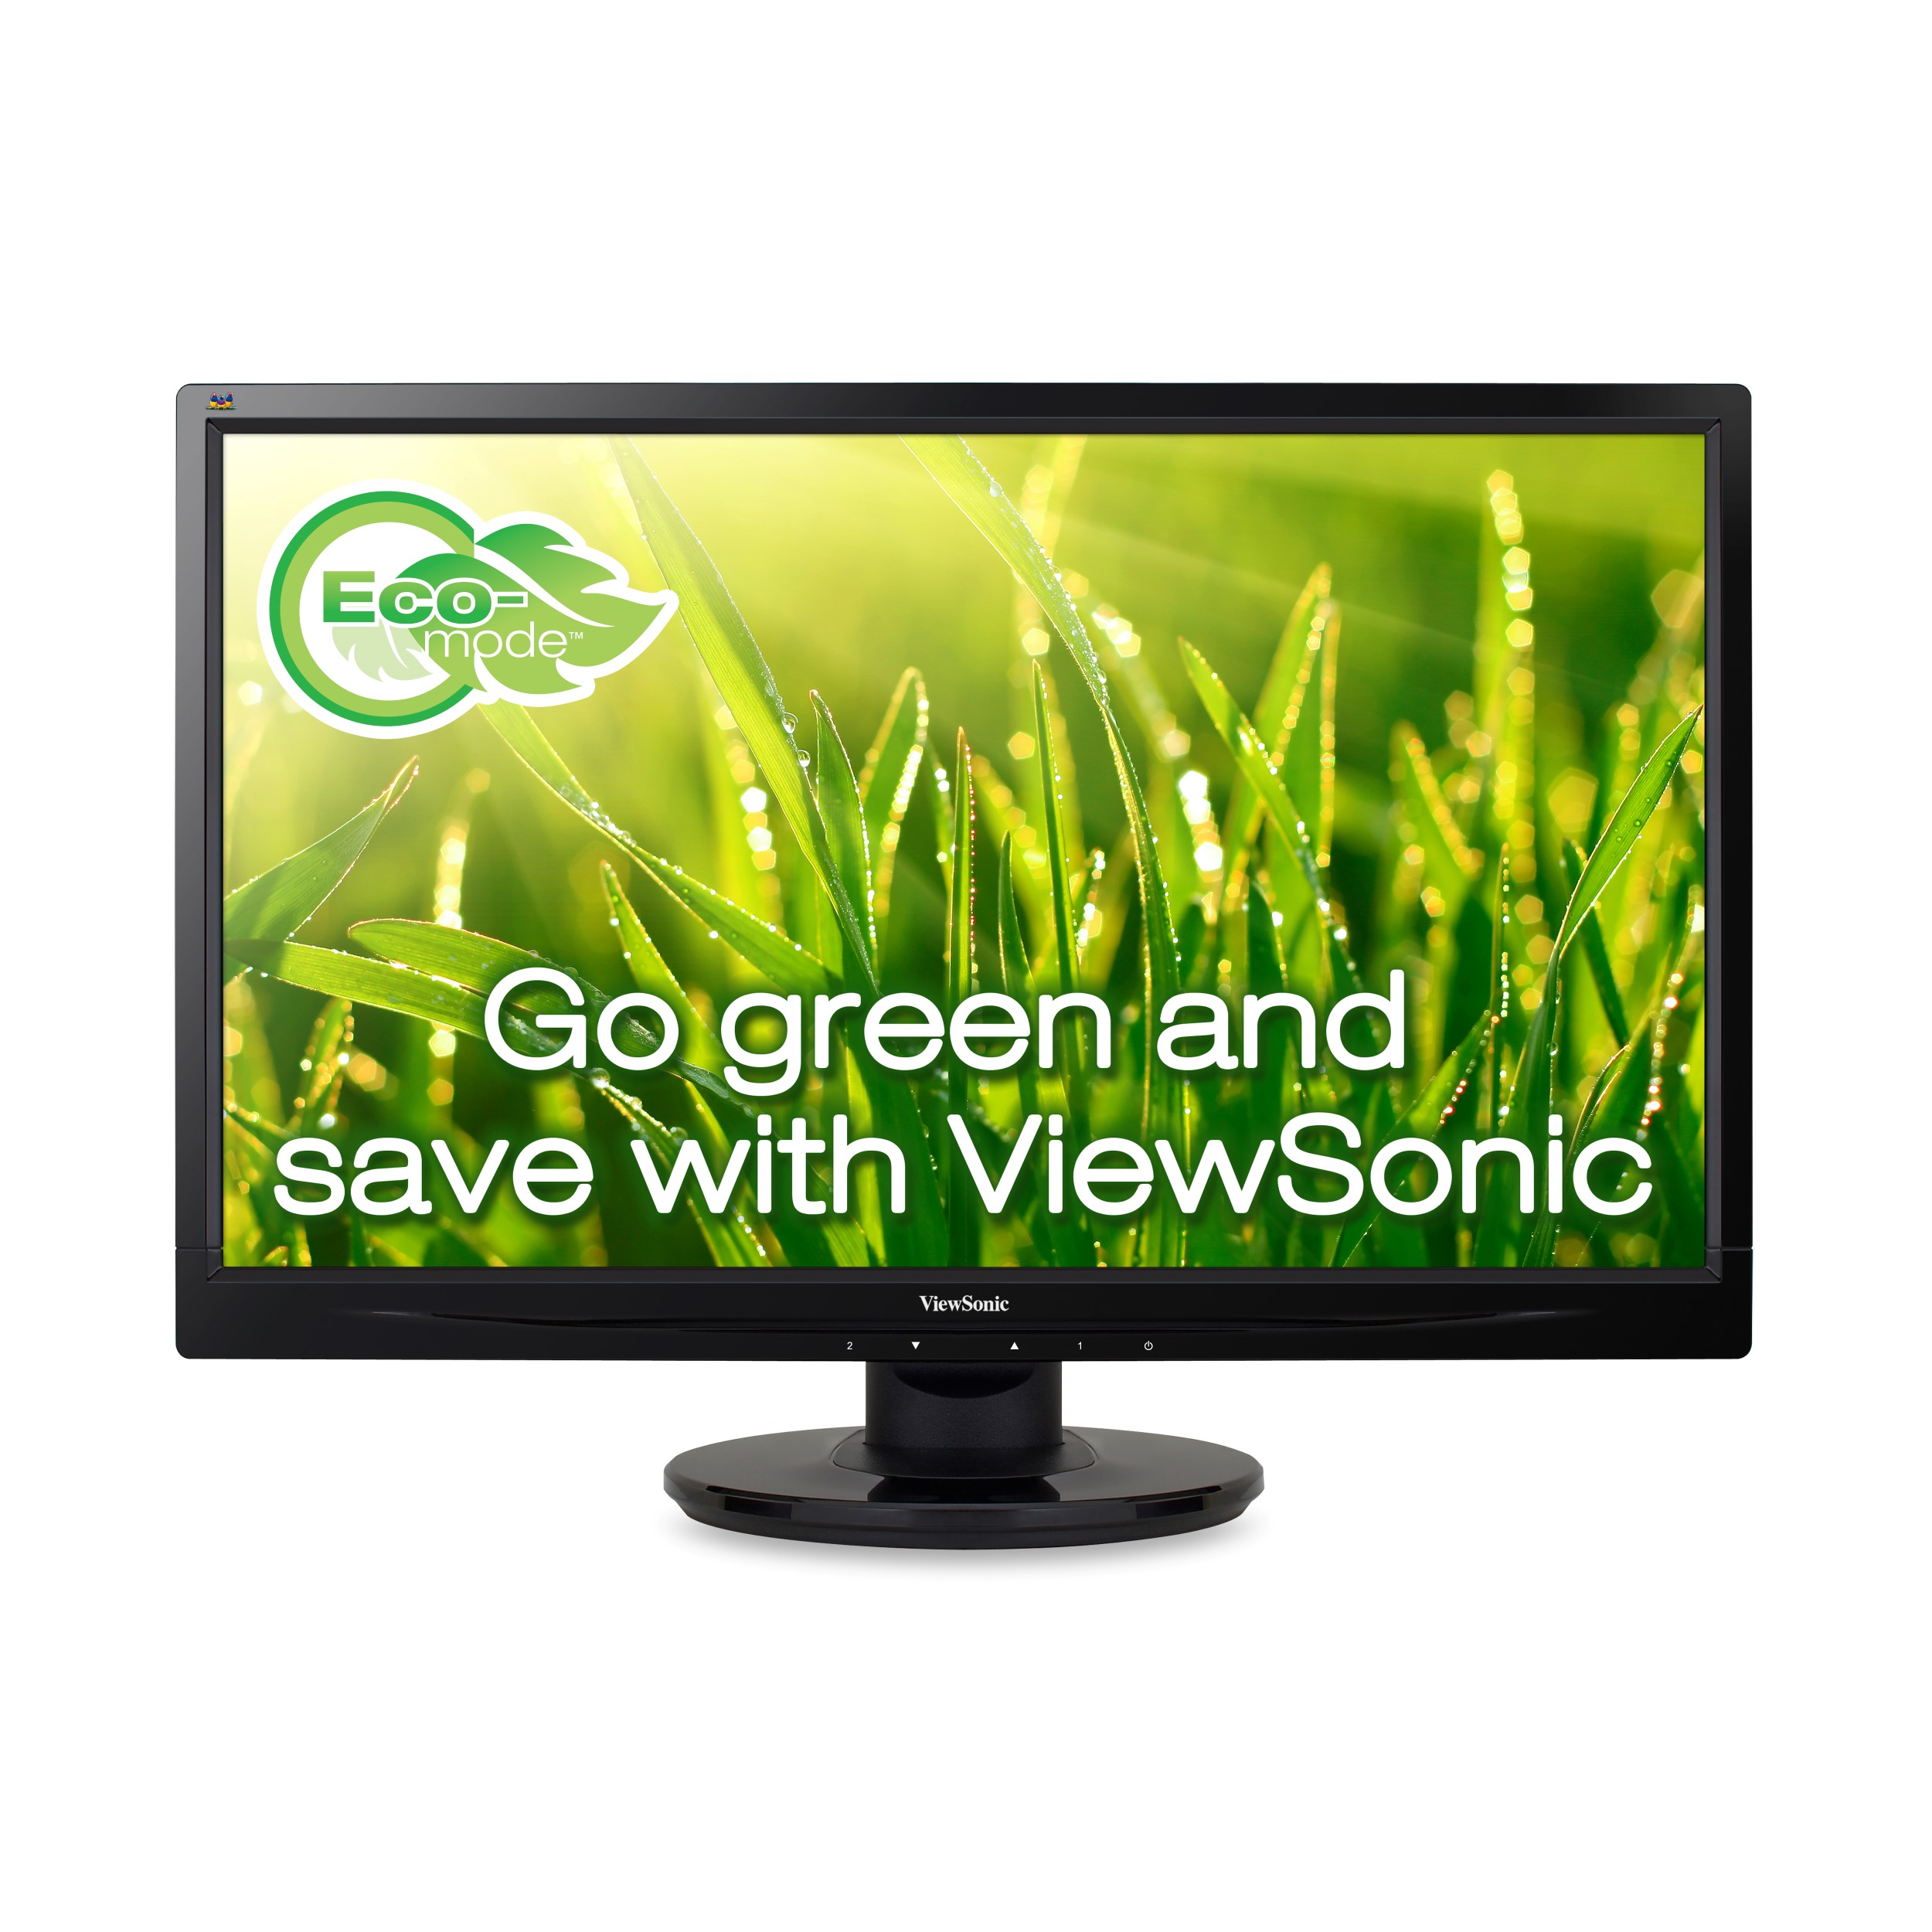 ViDiS wyłącznym dystrybutorem monitorów ViewSonic